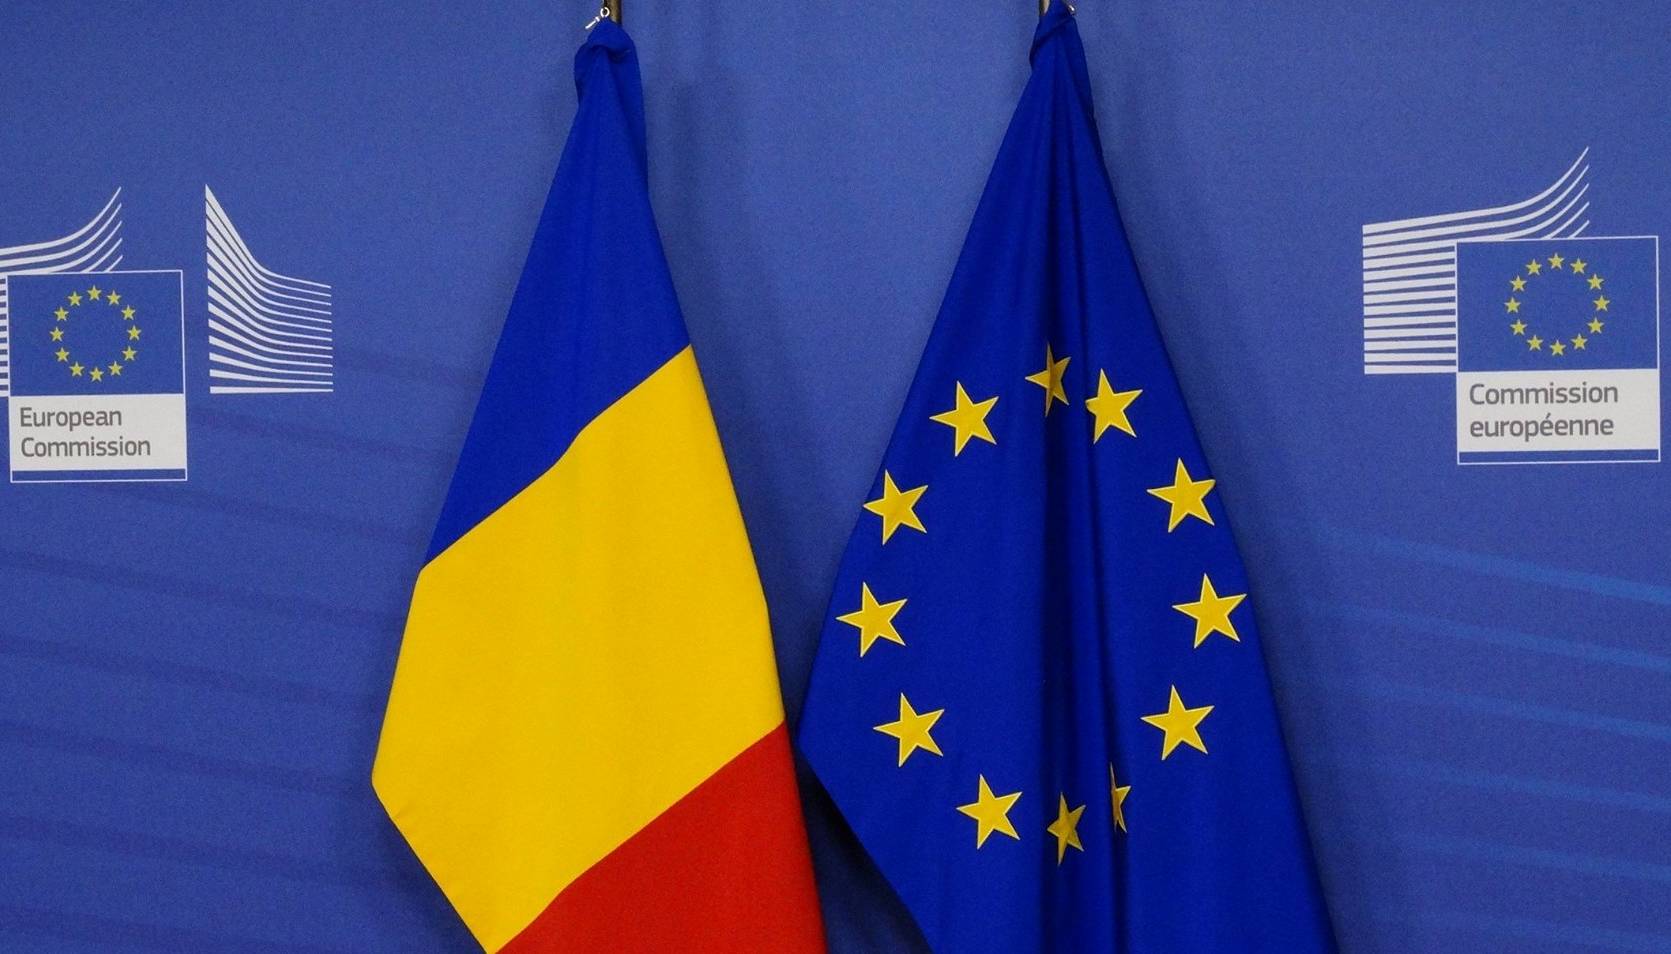 Comisia Europeana Ucraina ar Trebui sa Primeasca Statutul de Tara Canditata cat mai Curand